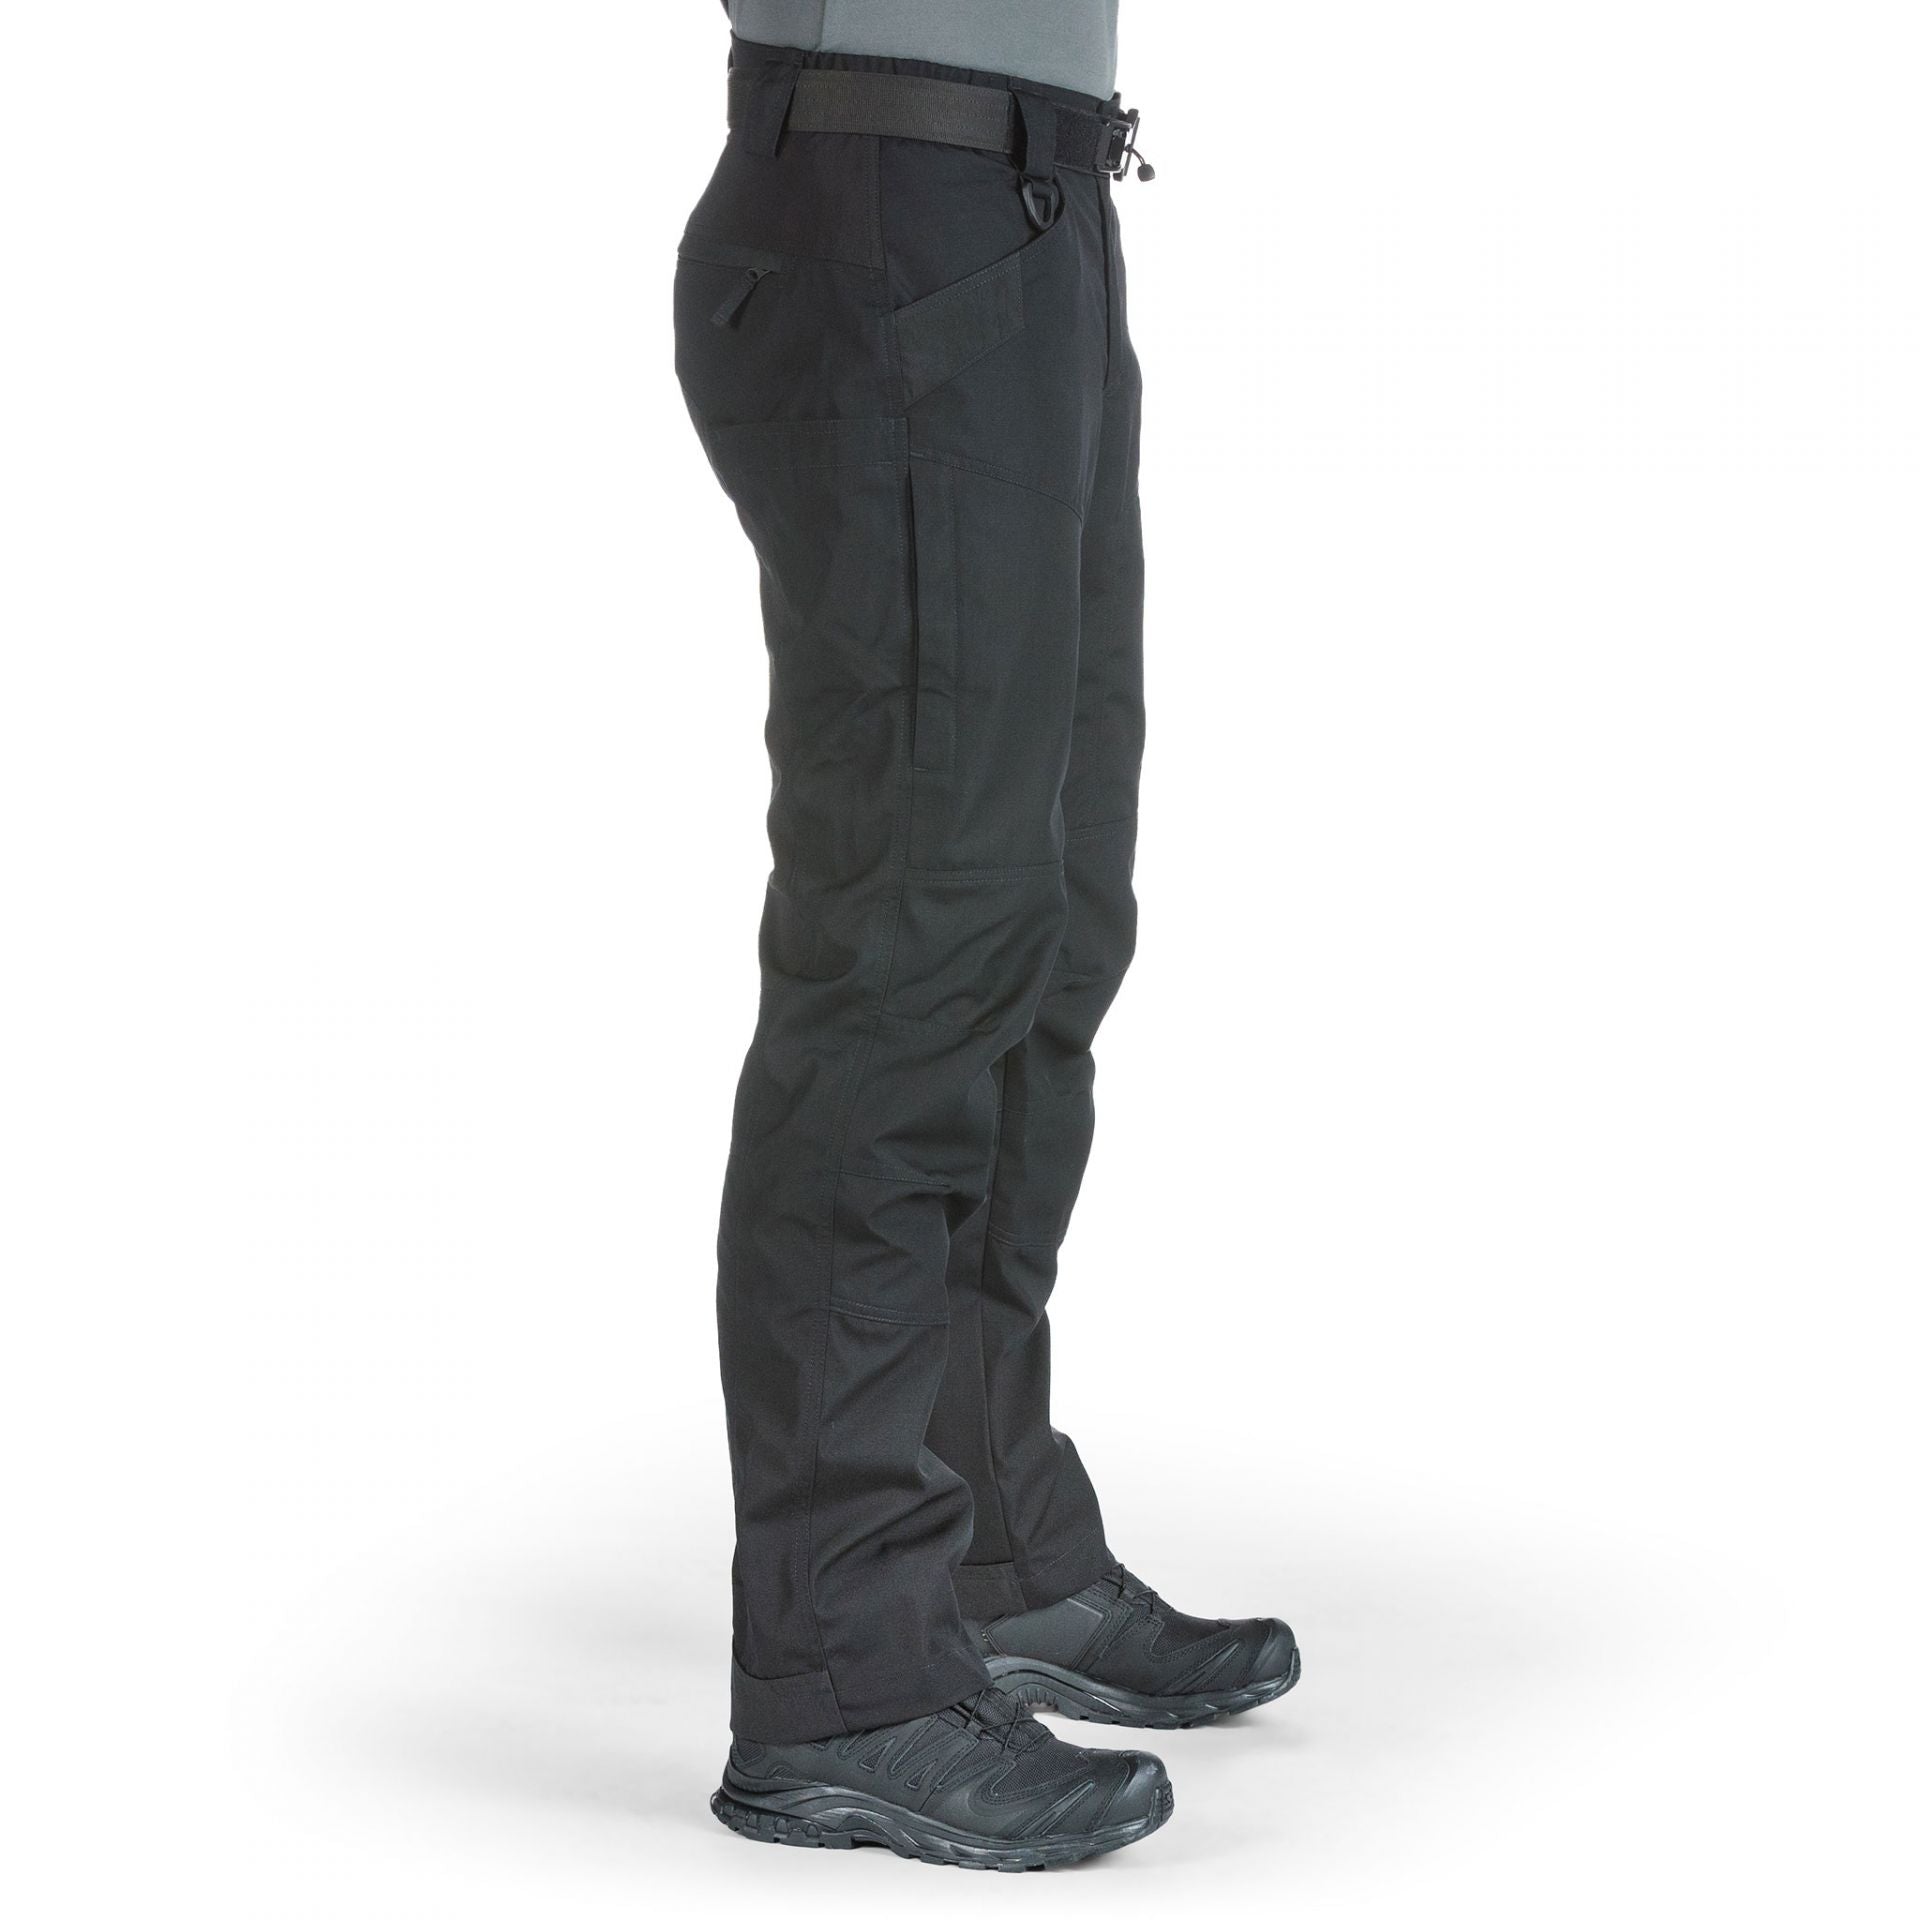 UF PRO P-40 Urban Tactical Pants [Black]